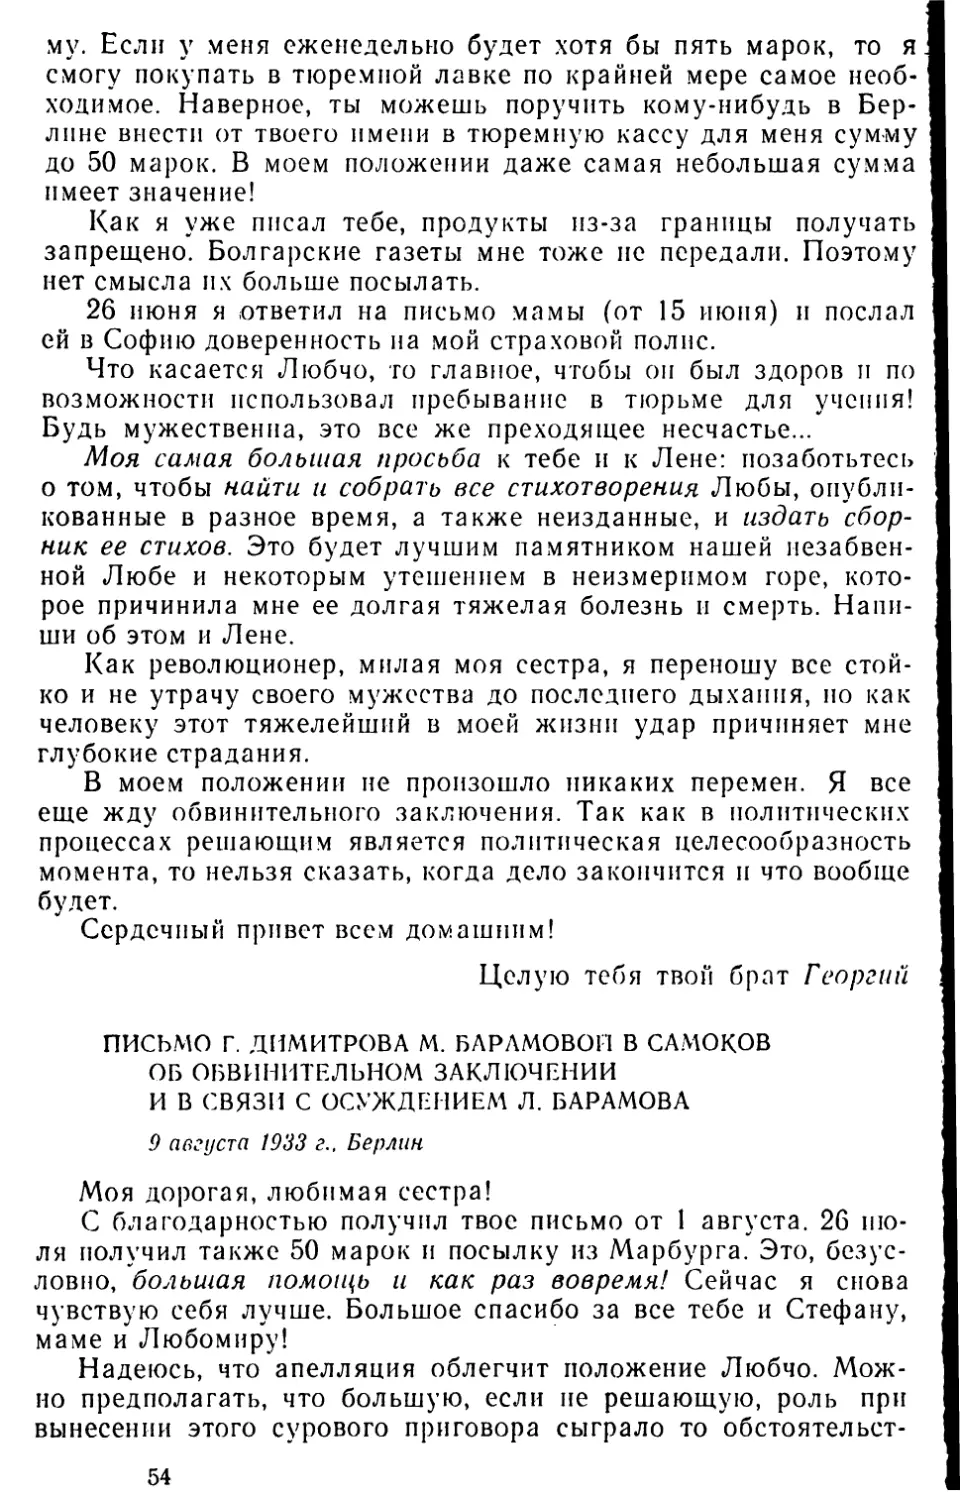 Письмо Г. Димитрова М. Барамовой в Самоков об обвинительном заключении и в связи с осуждением Л. Барамова. 9 августа 1933 г